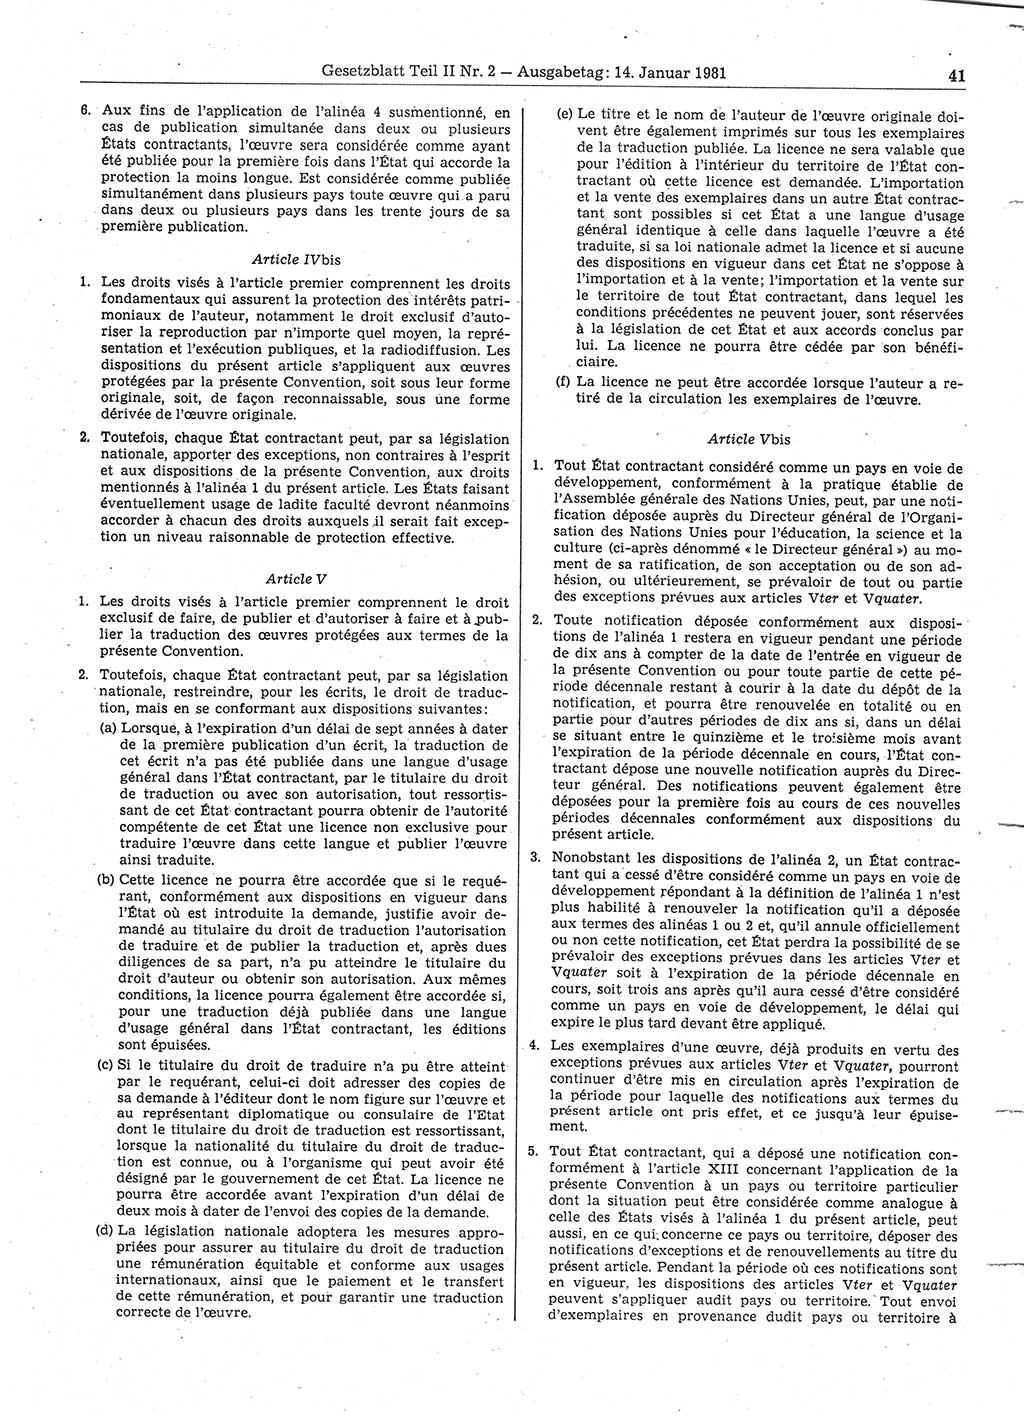 Gesetzblatt (GBl.) der Deutschen Demokratischen Republik (DDR) Teil ⅠⅠ 1981, Seite 41 (GBl. DDR ⅠⅠ 1981, S. 41)